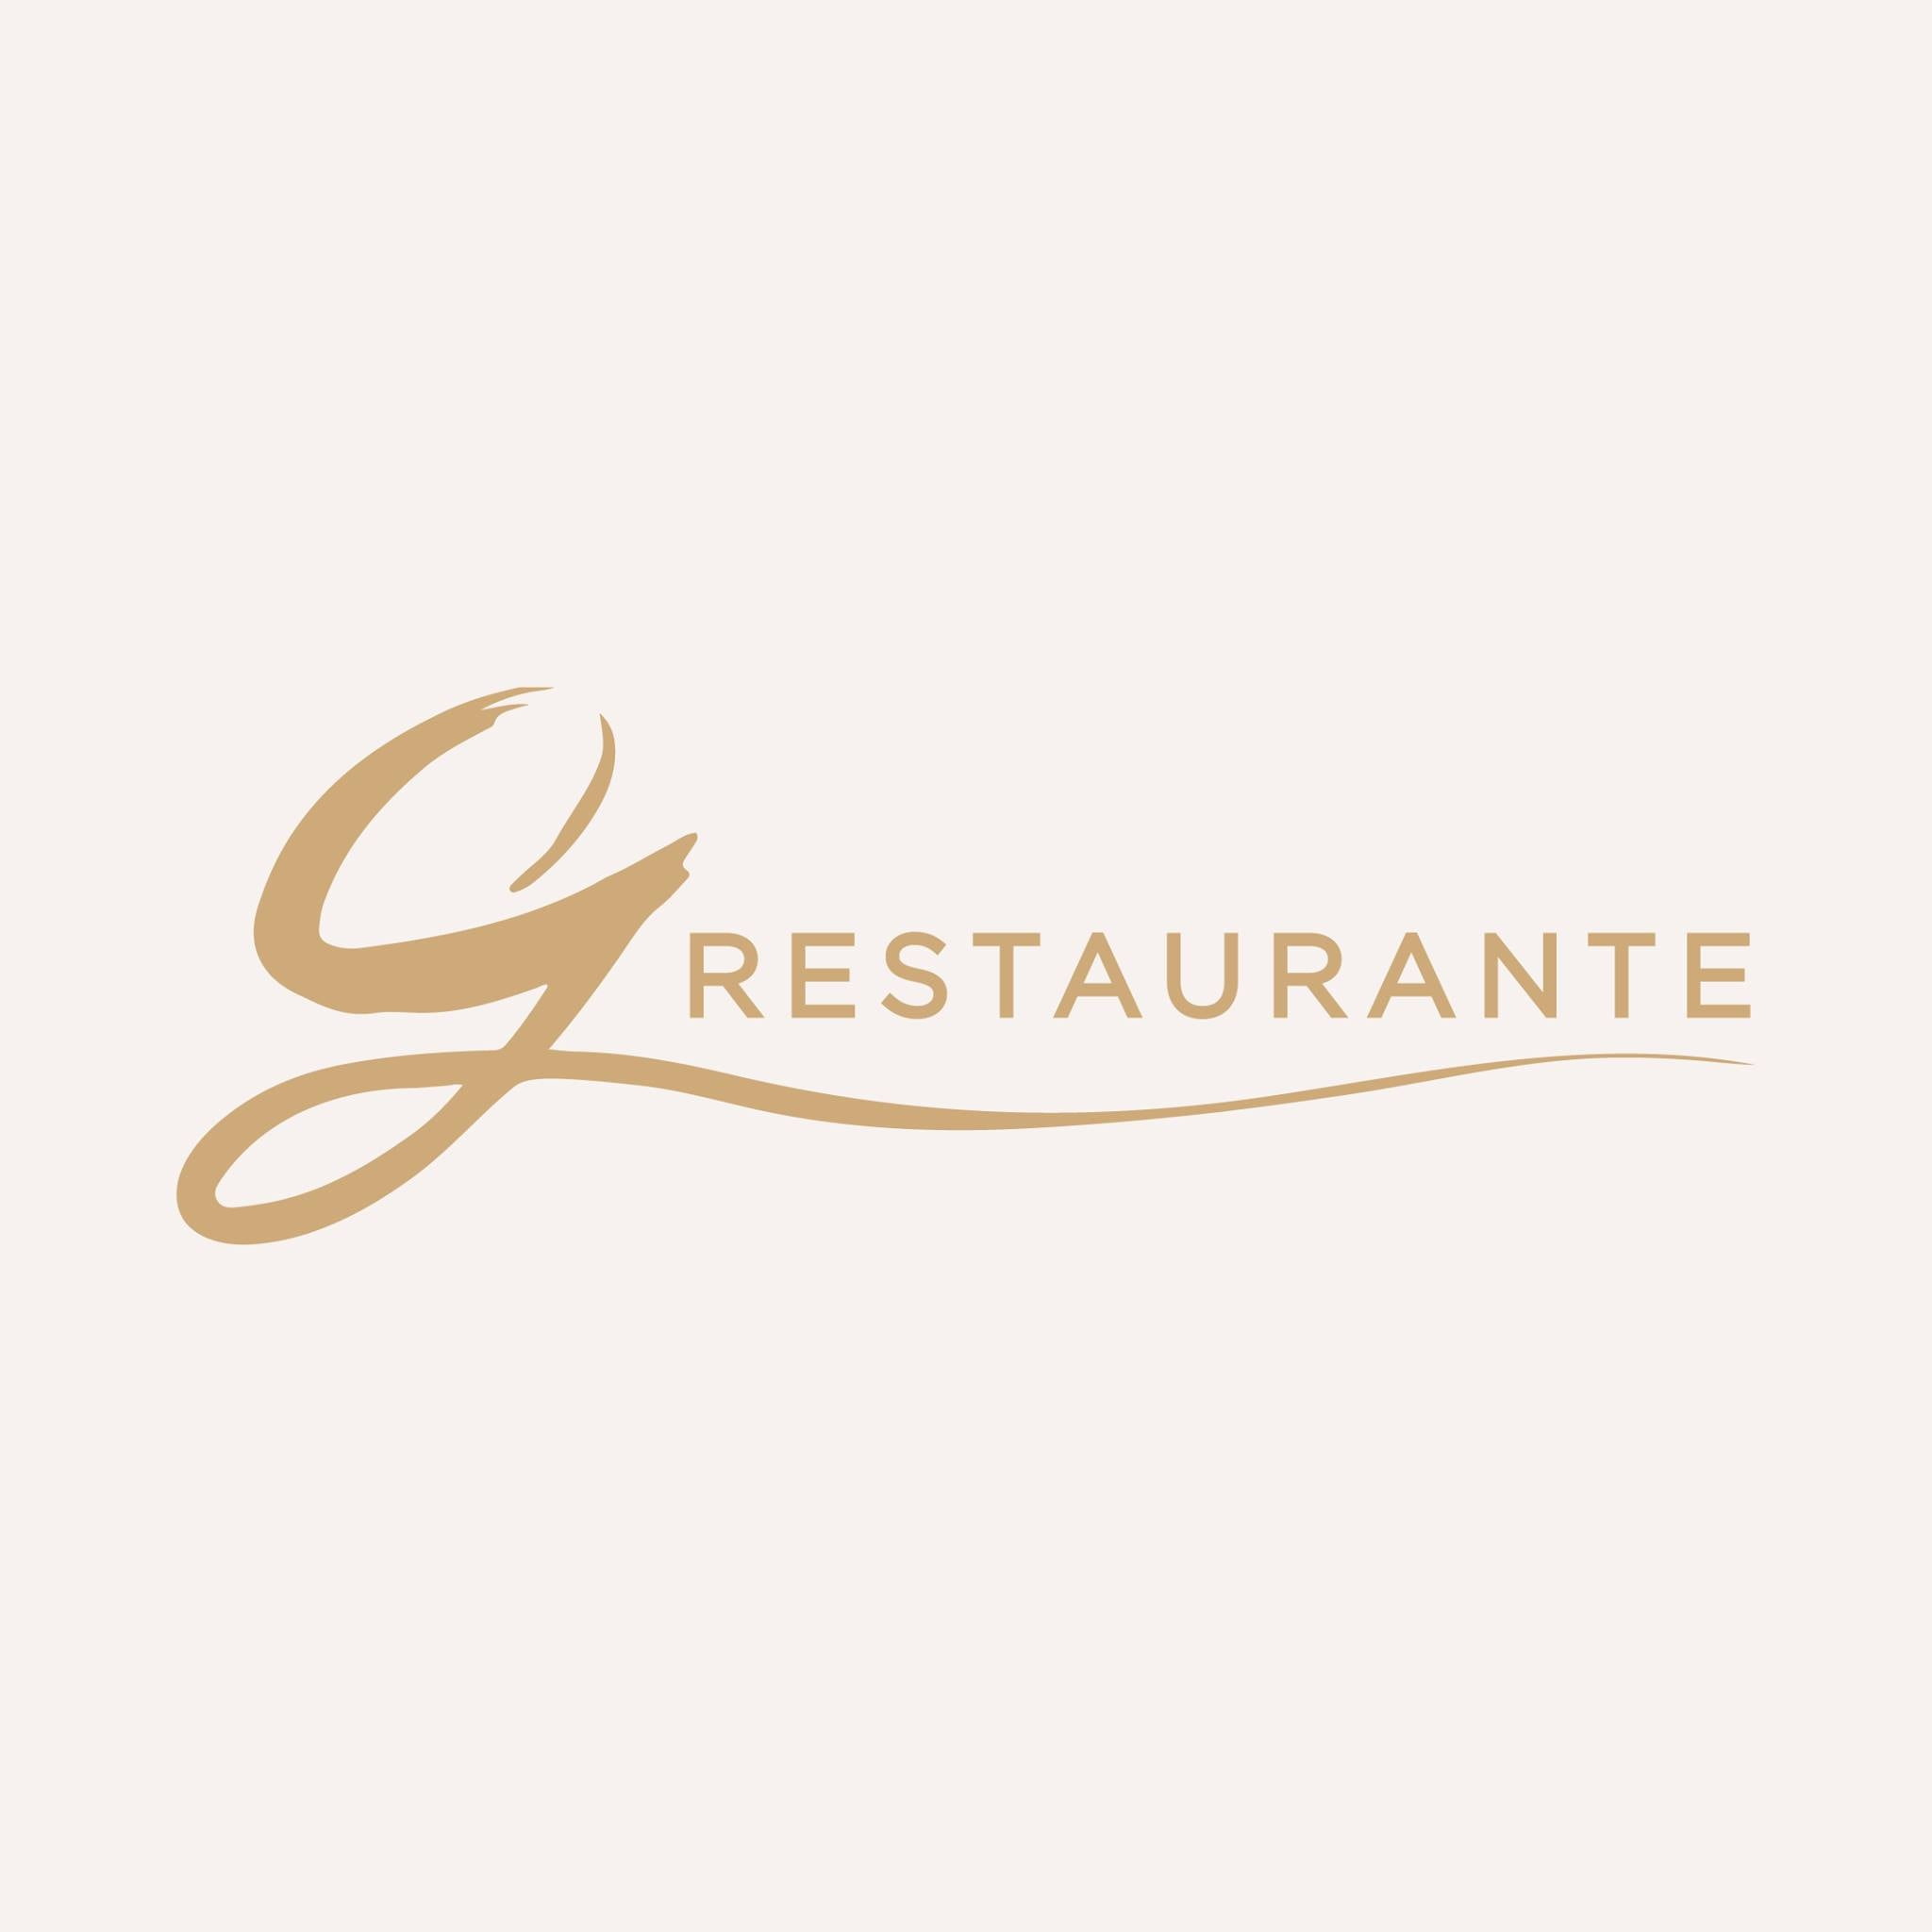 G Restaurante